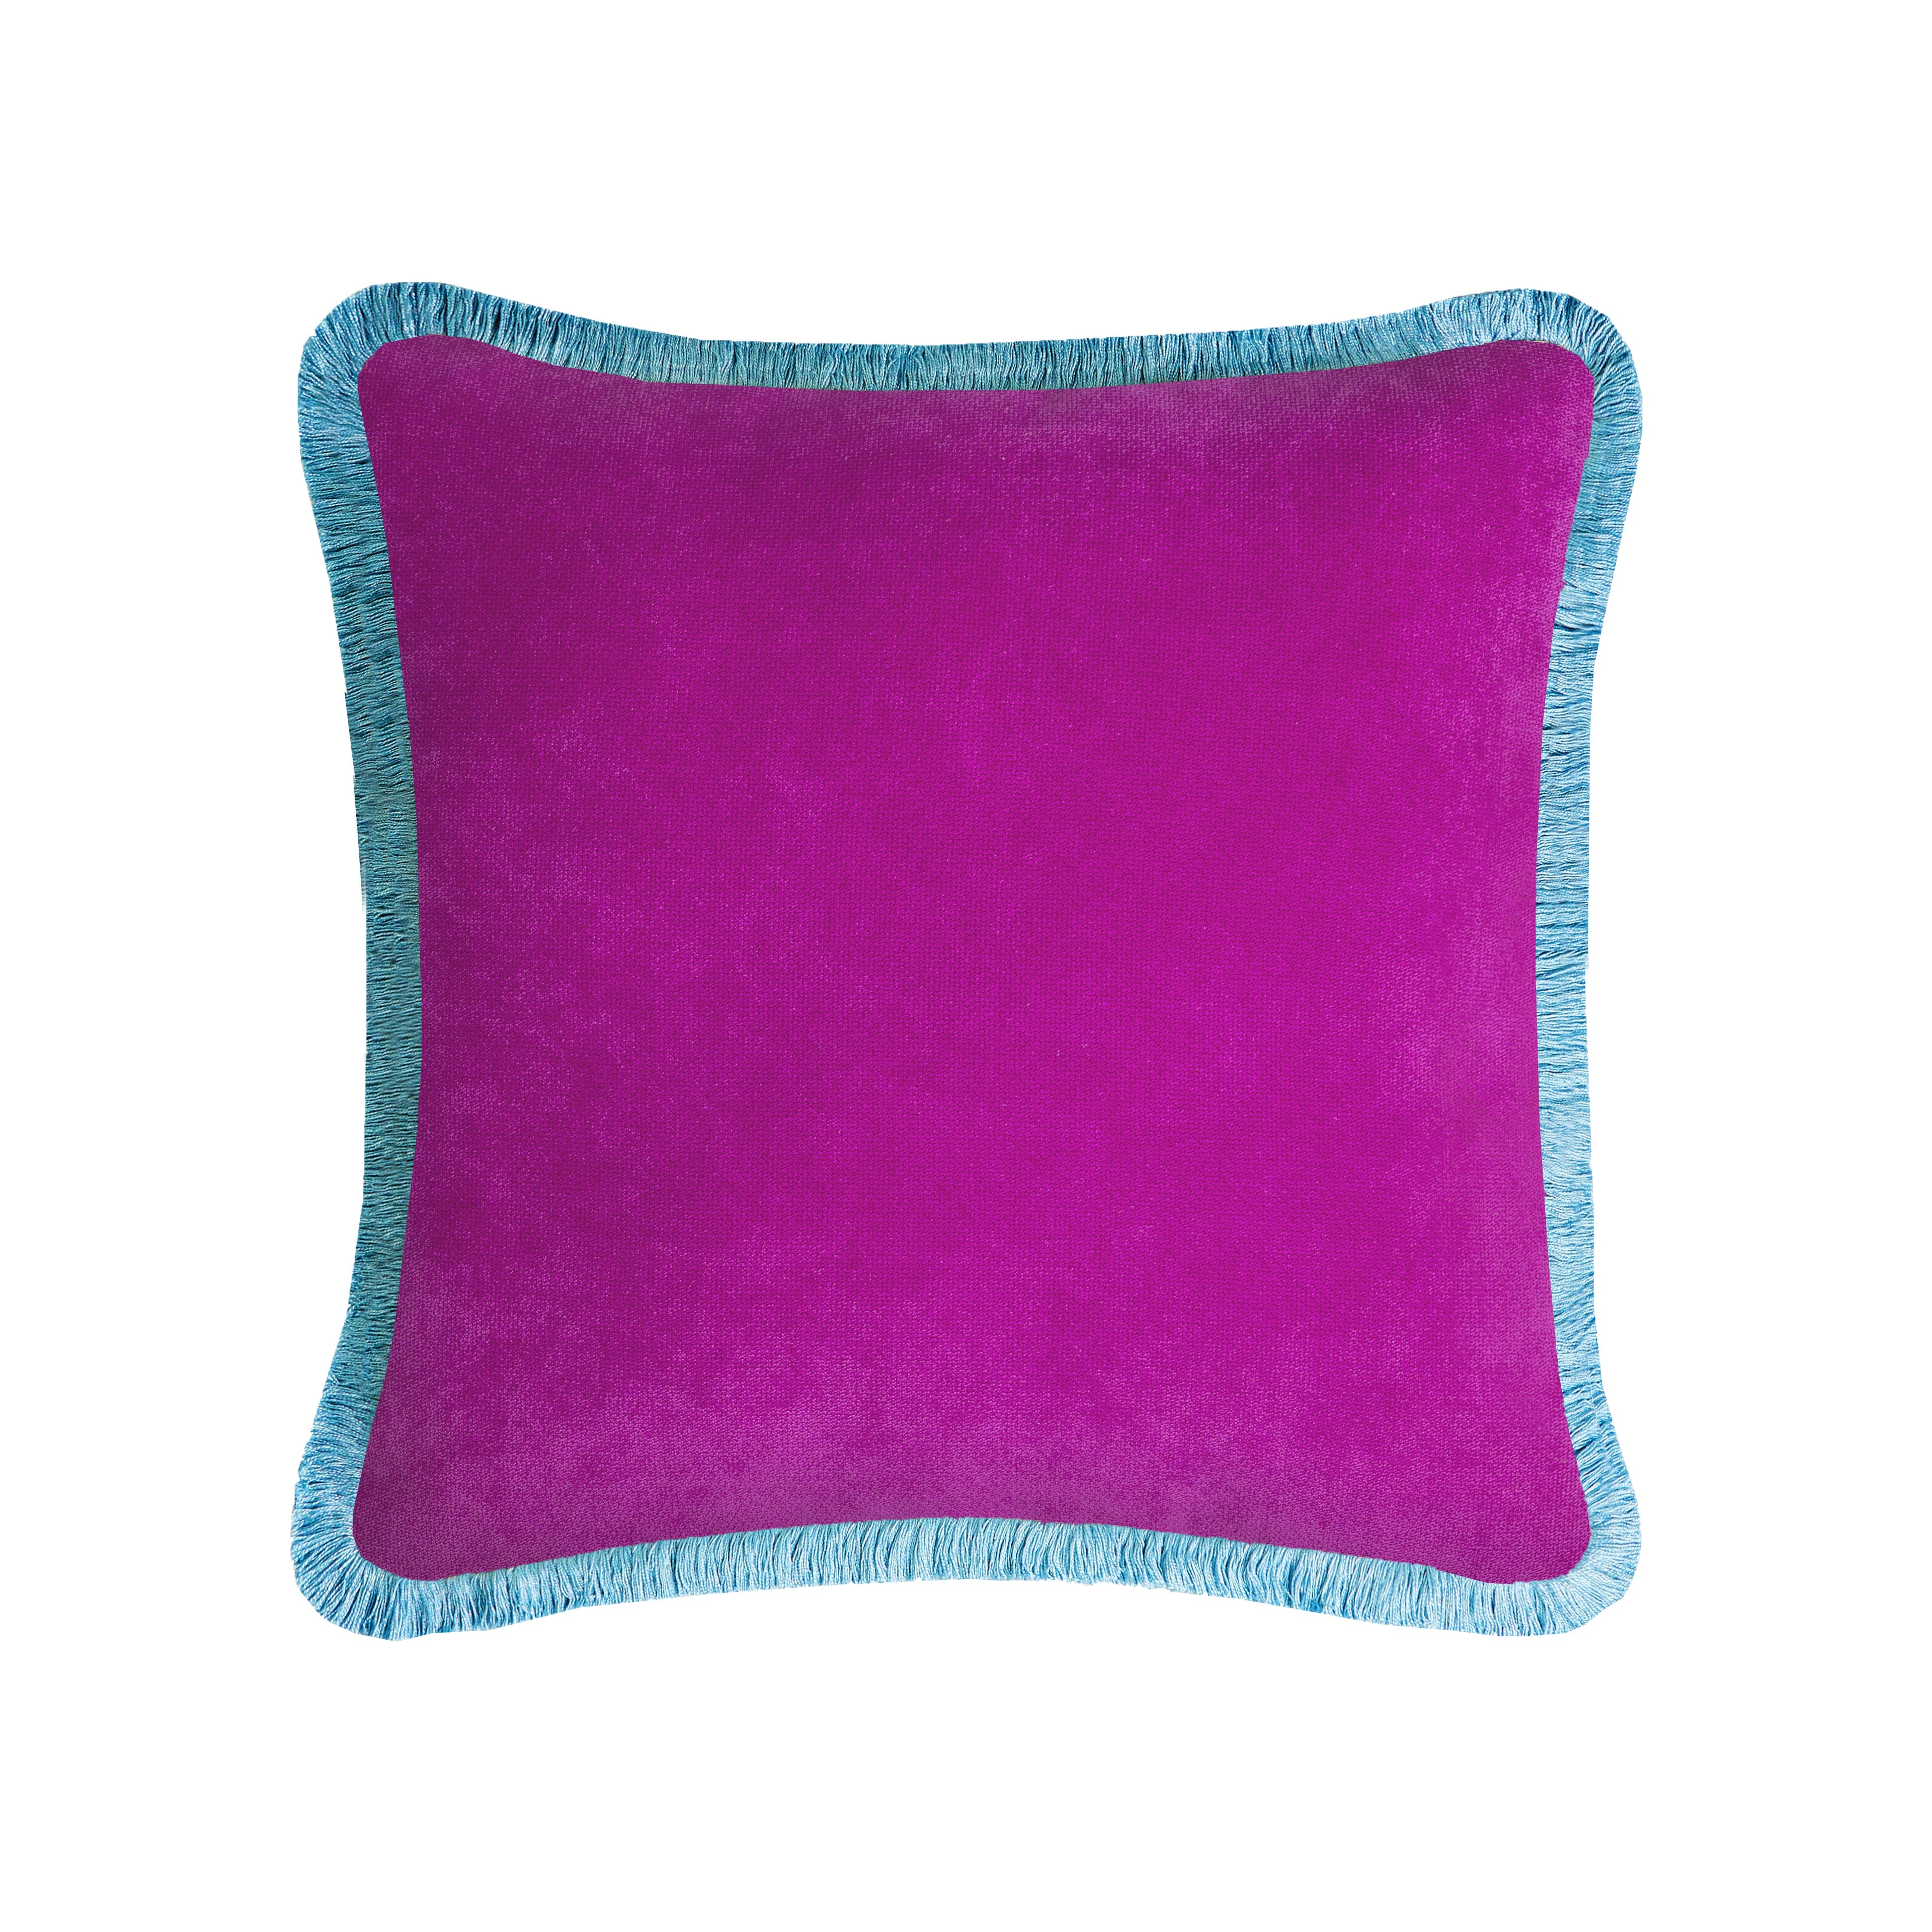 LO Decor Velvet Lilac & Blue Fringe Pillow